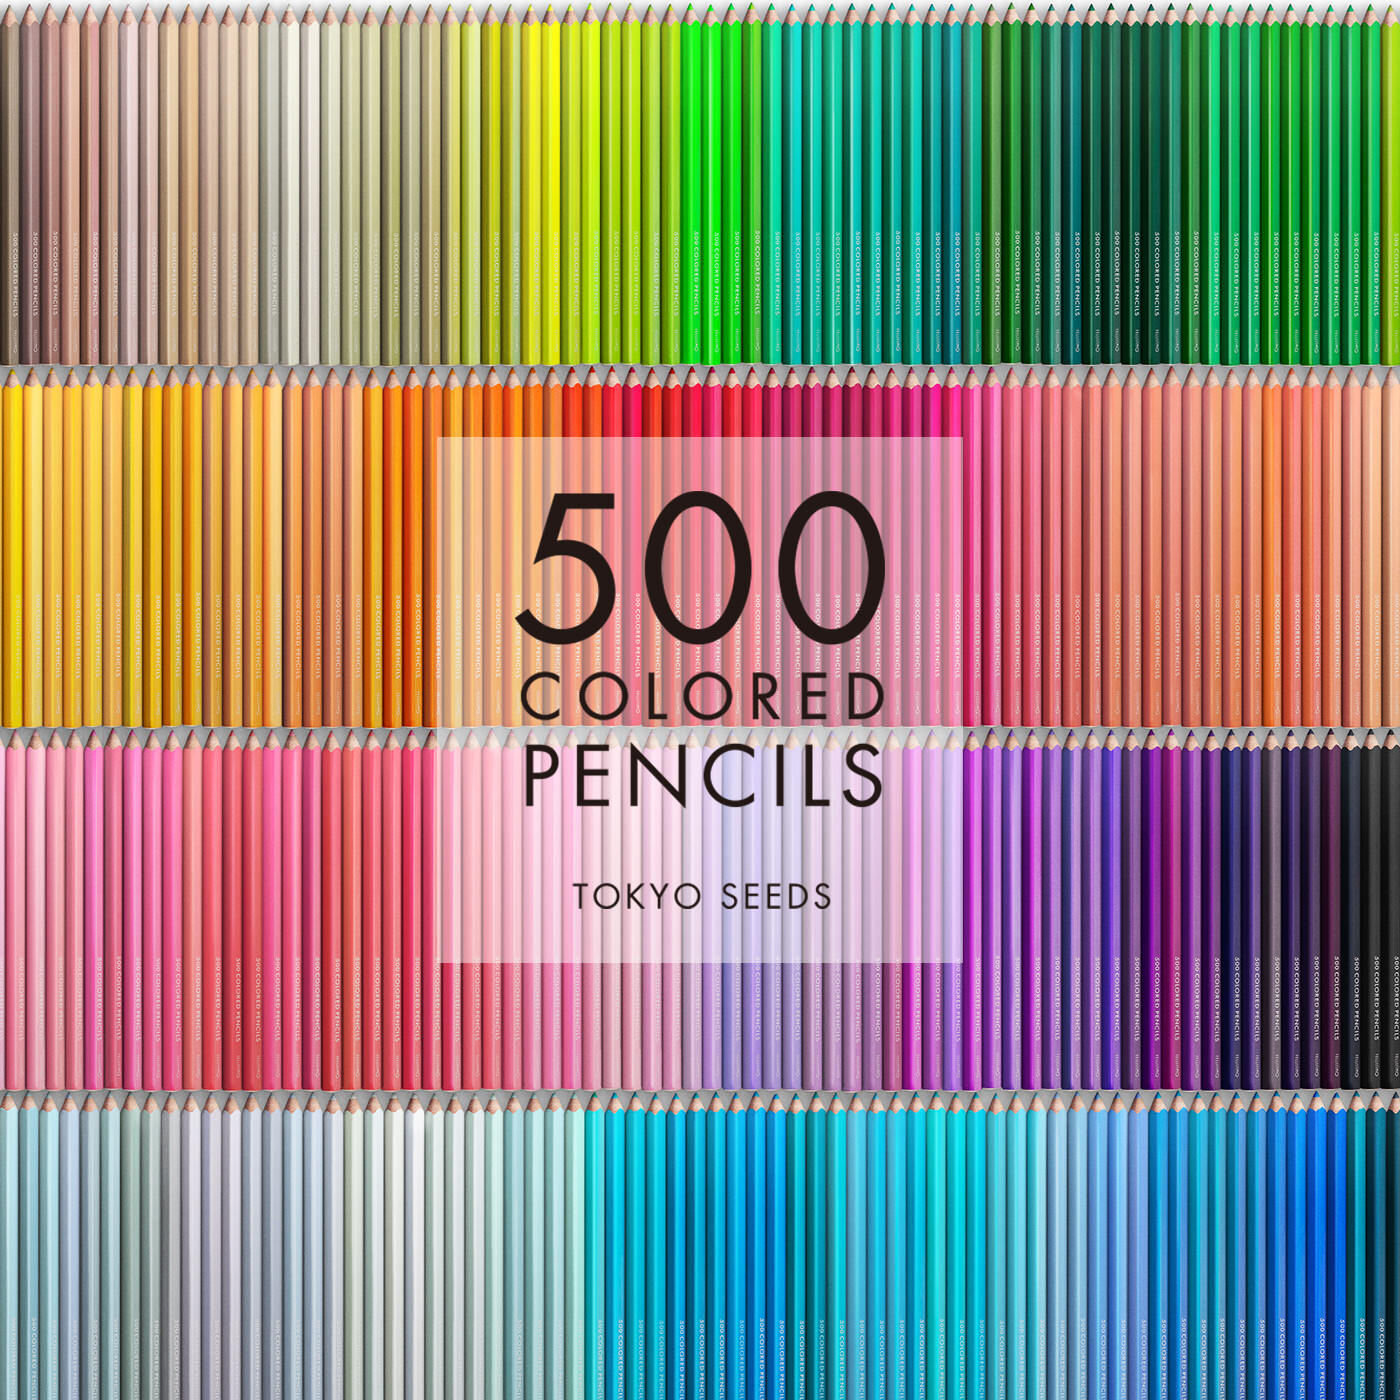 Real Stock|【300/500 BUNGALOW BRILLIANT】500色の色えんぴつ TOKYO SEEDS|1992年、世界初の「500色」という膨大な色数の色えんぴつが誕生して以来、その販売数は発売当初から合わせると、世界55ヵ国10万セット以上。今回、メイド・イン・ジャパンにこだわり、すべてが新しく生まれ変わって登場しました。